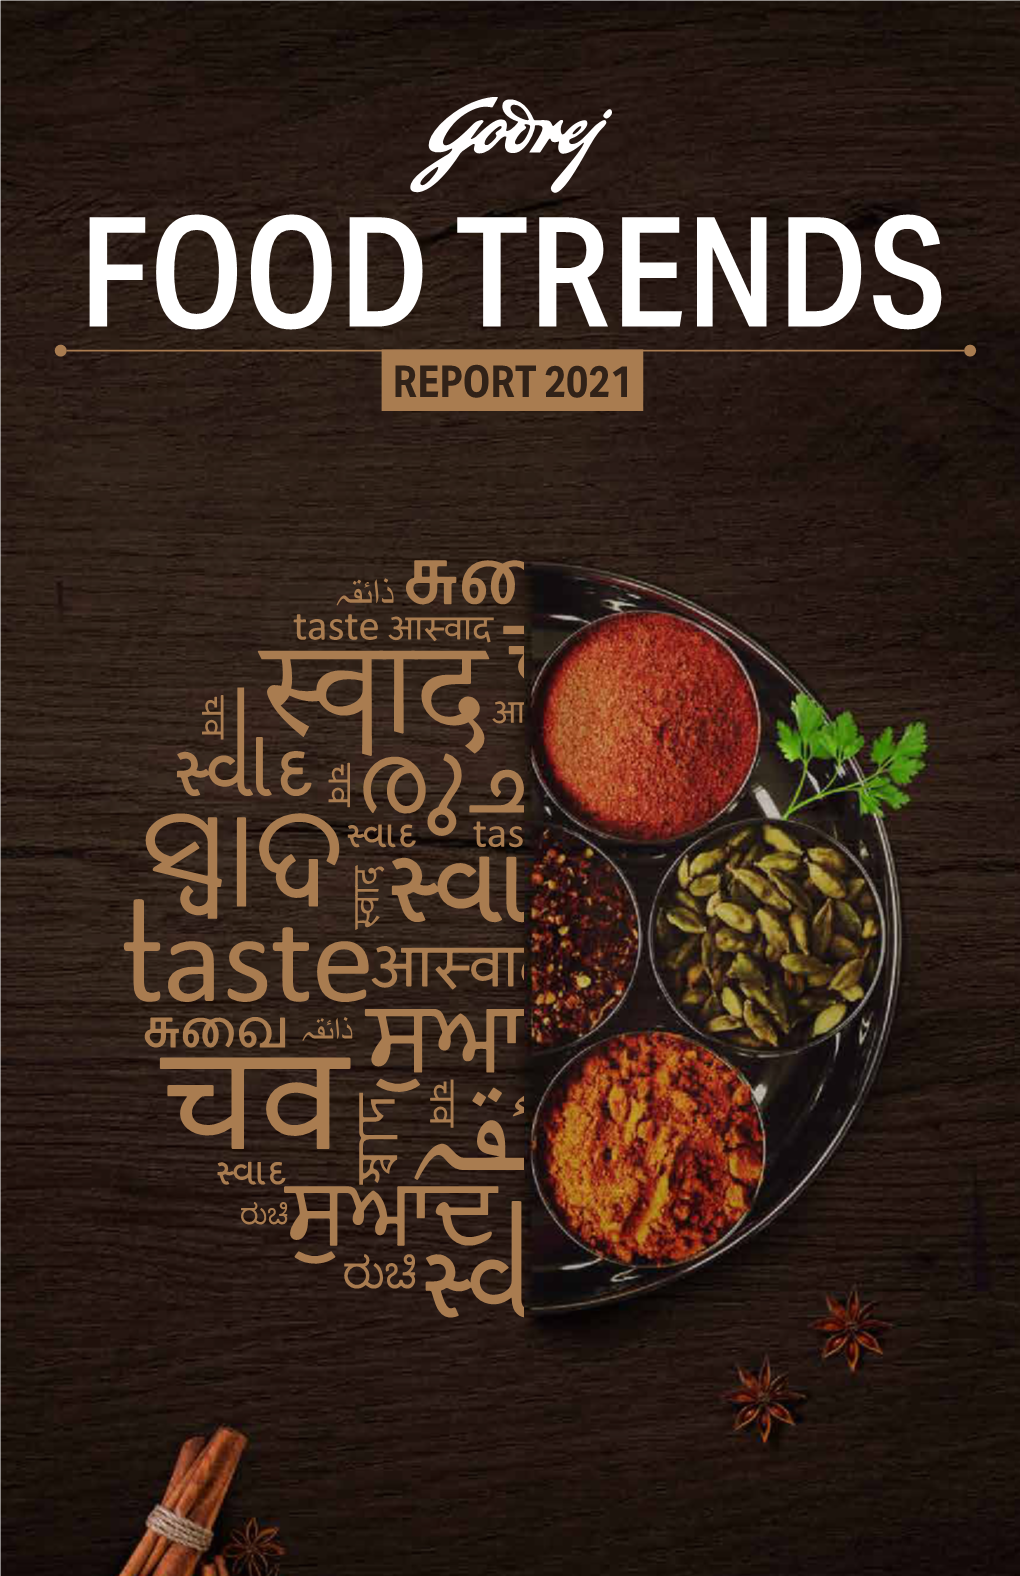 Godrej Food Trends Report 2021